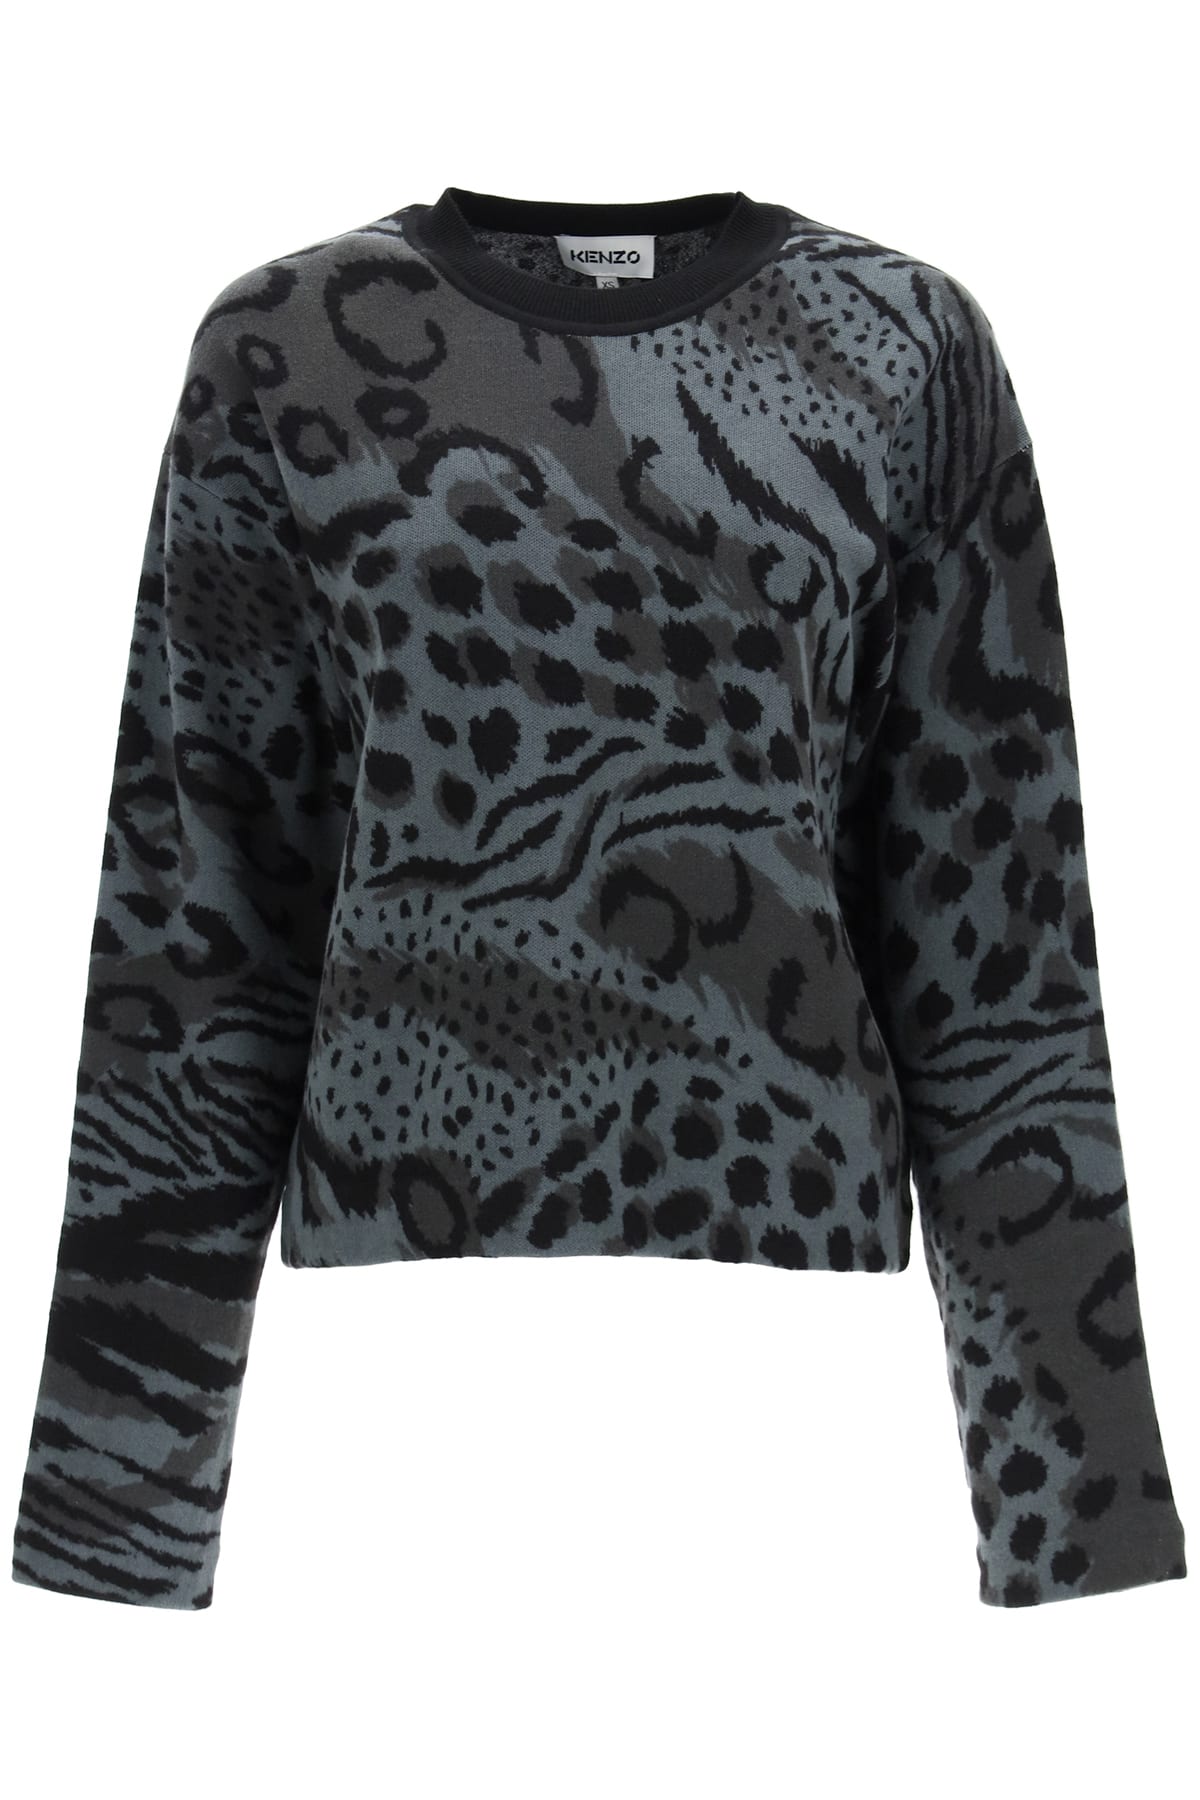 Kenzo Leopard Sweater